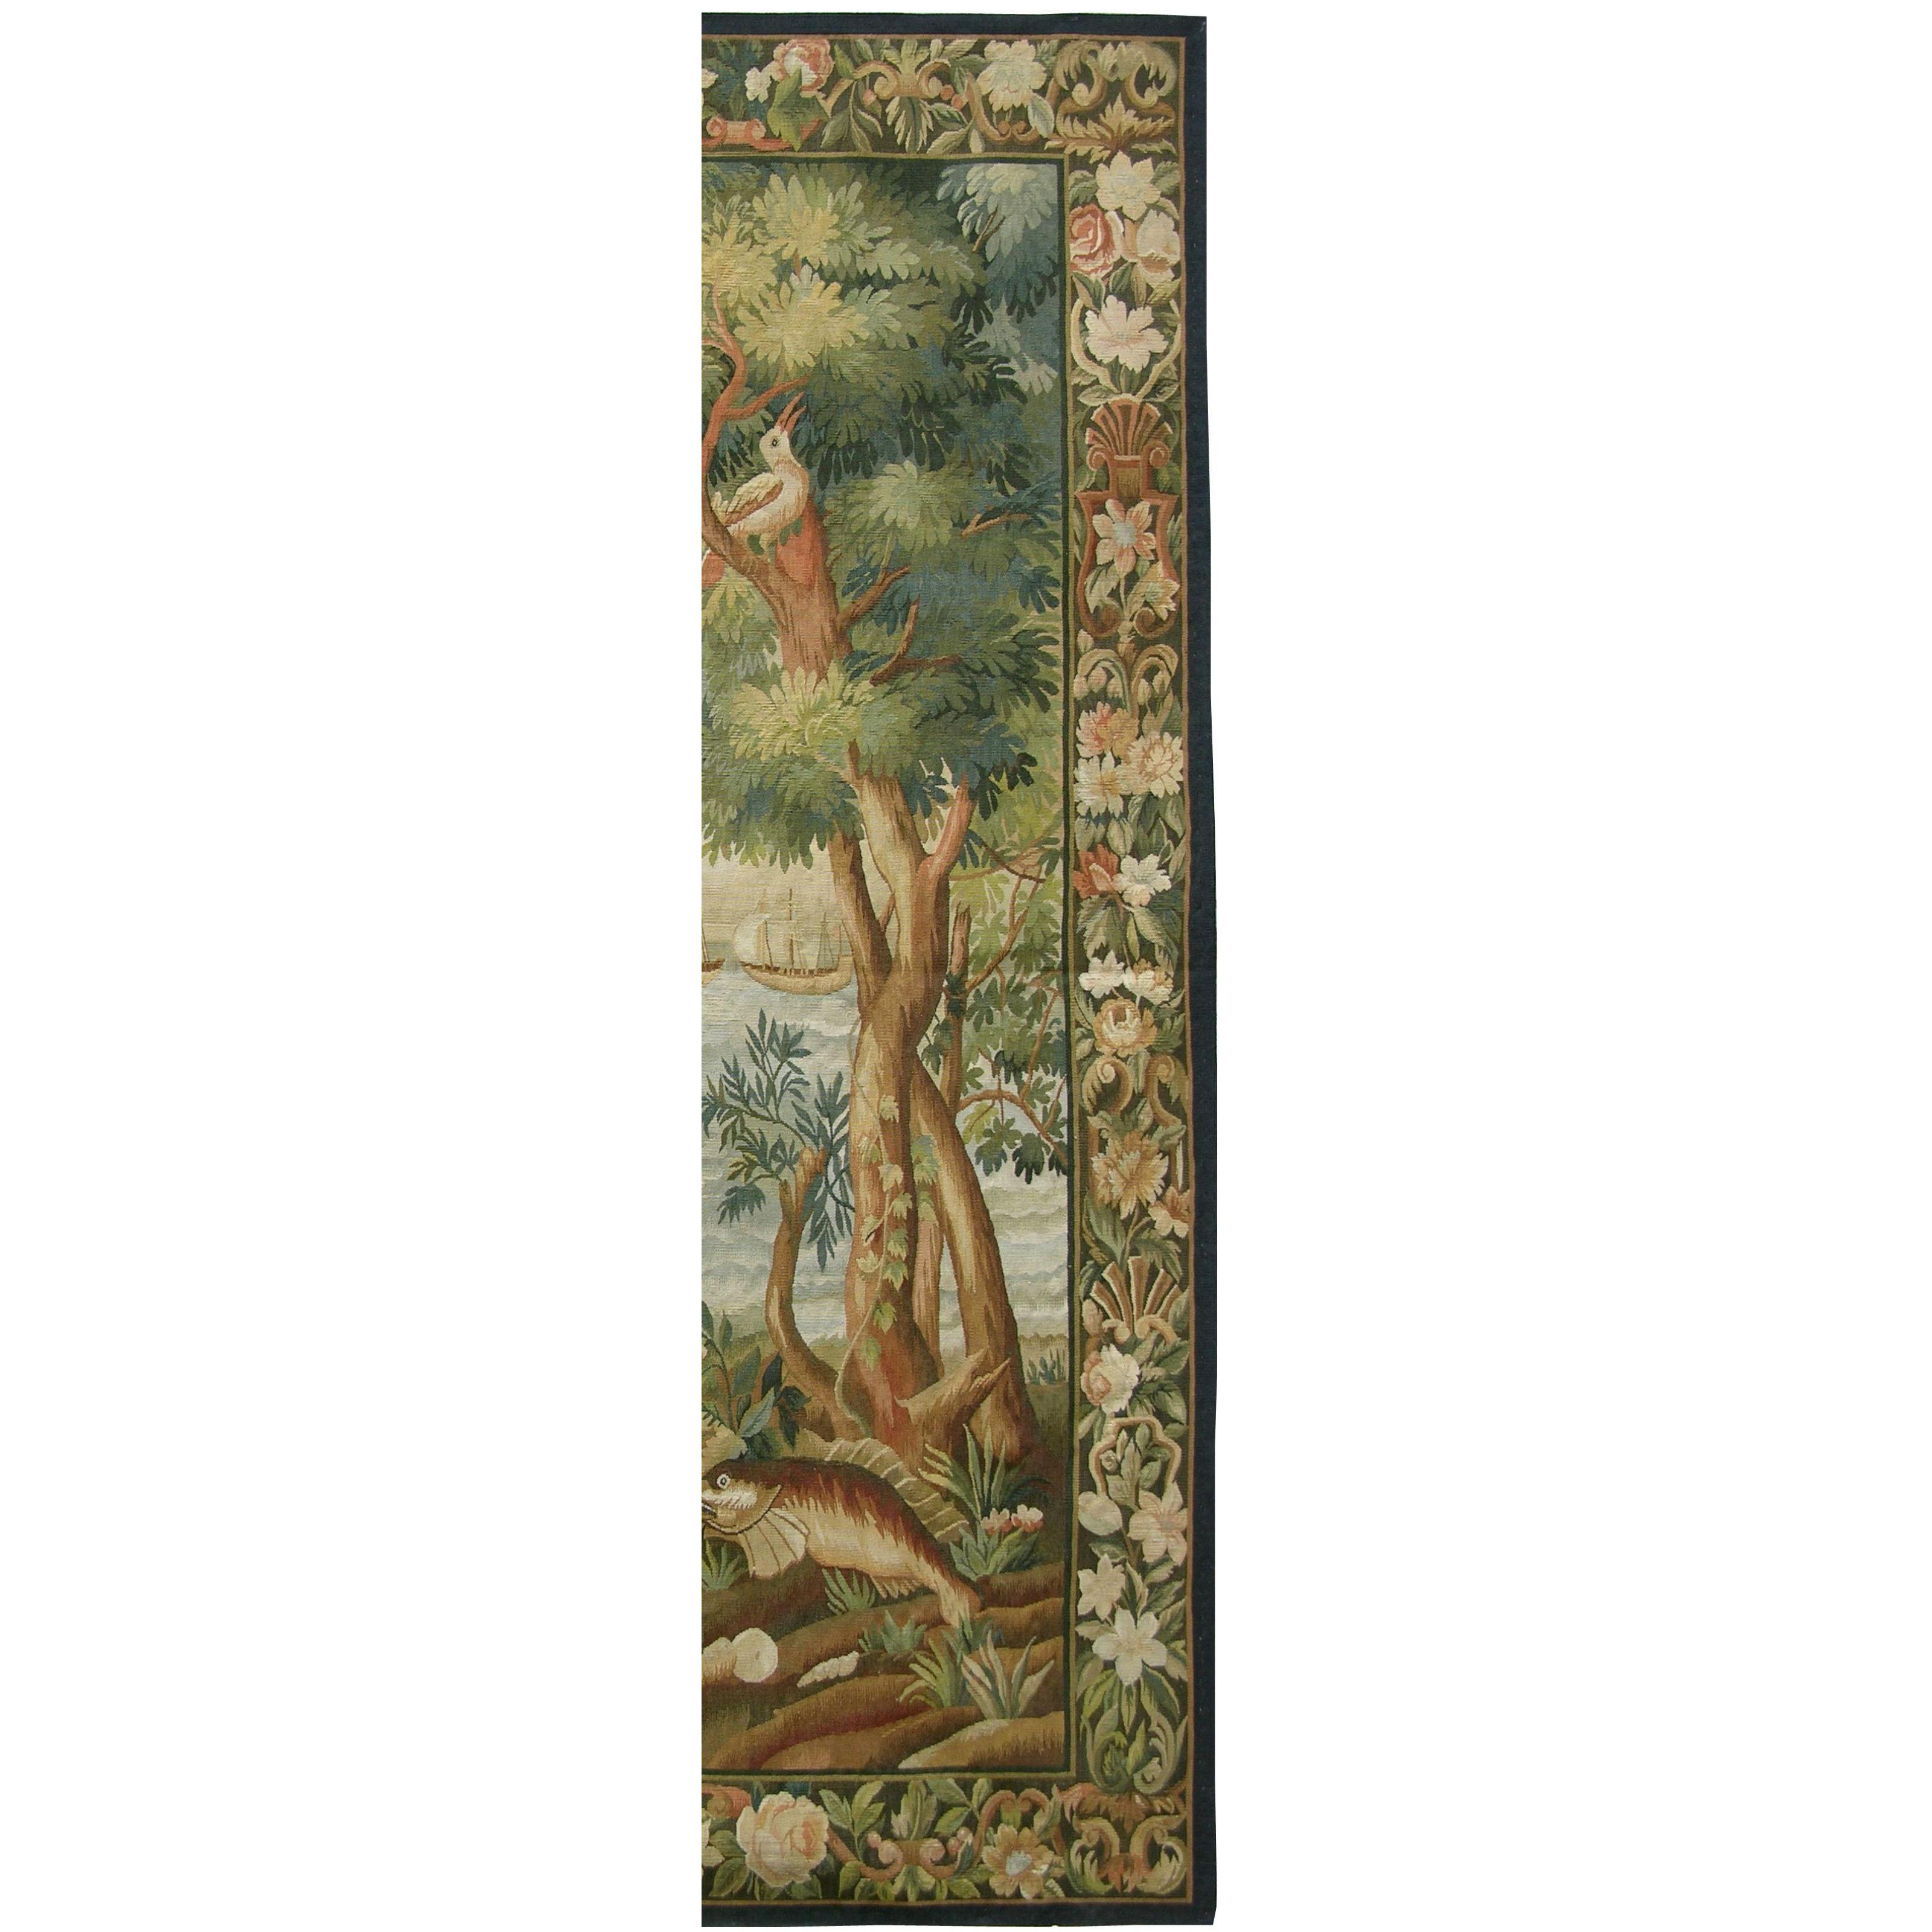 Unknown Vintage Tapestry Depicting Wildlife 6'2